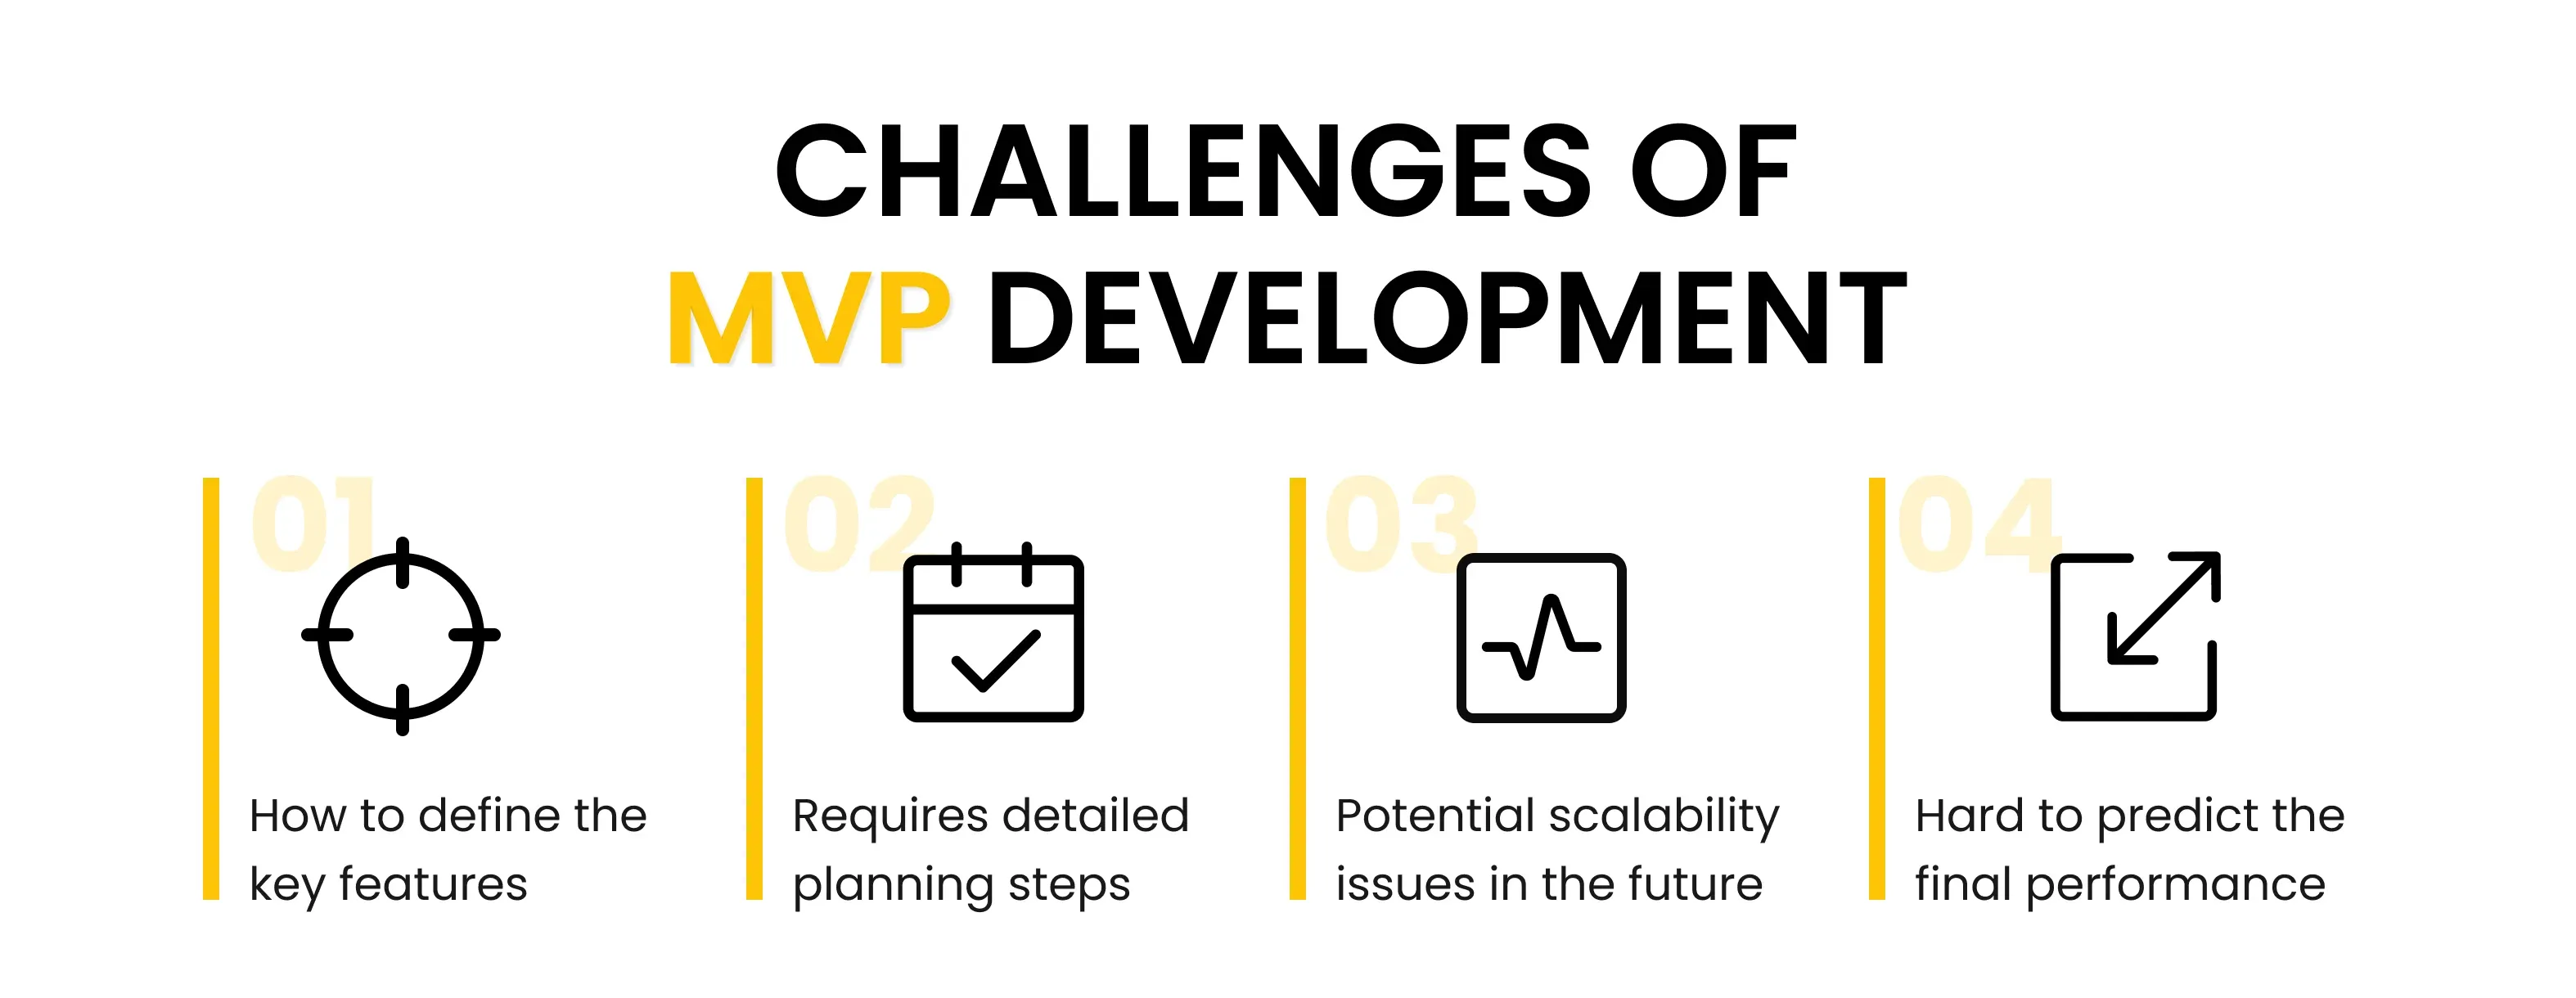 Challenges of MVP Development